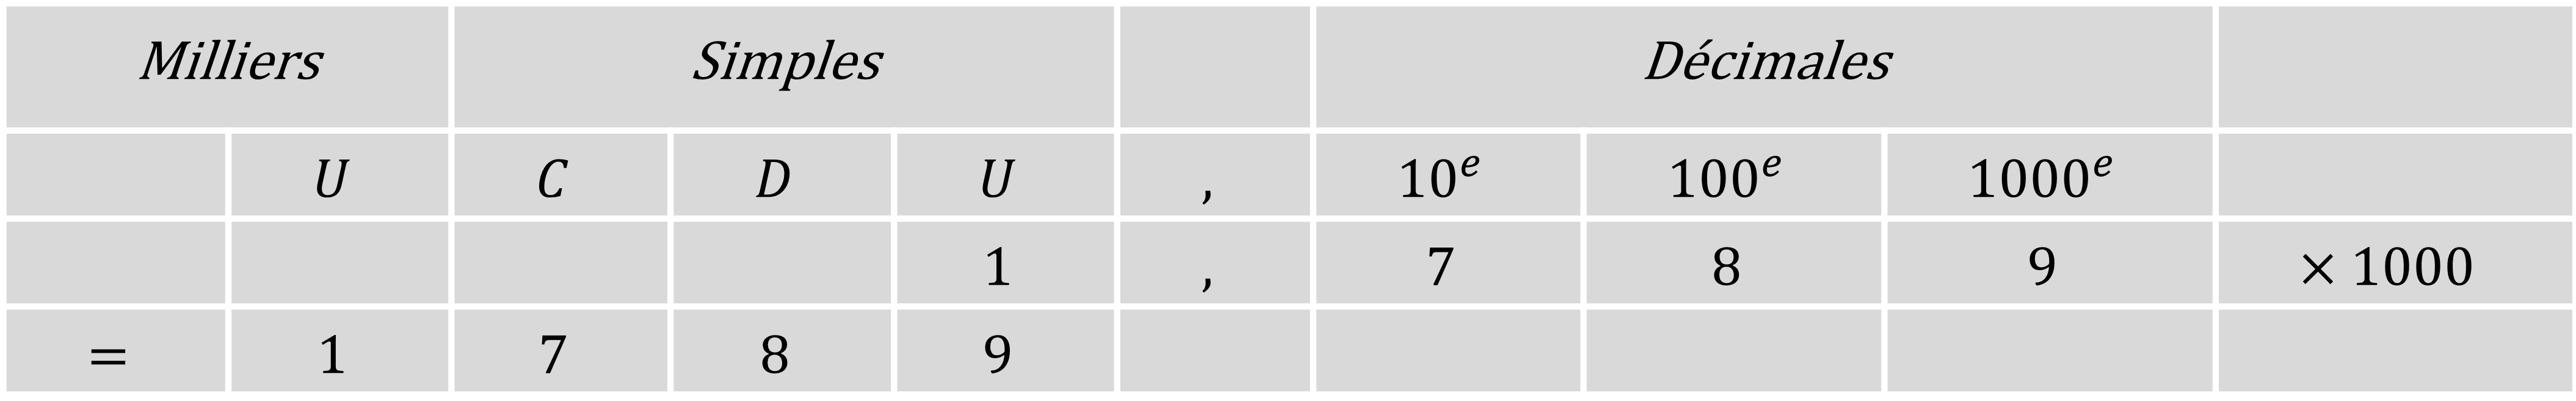 Mathématiques; Multiplication; CM1; Multiplication par 10, 100 et 1000